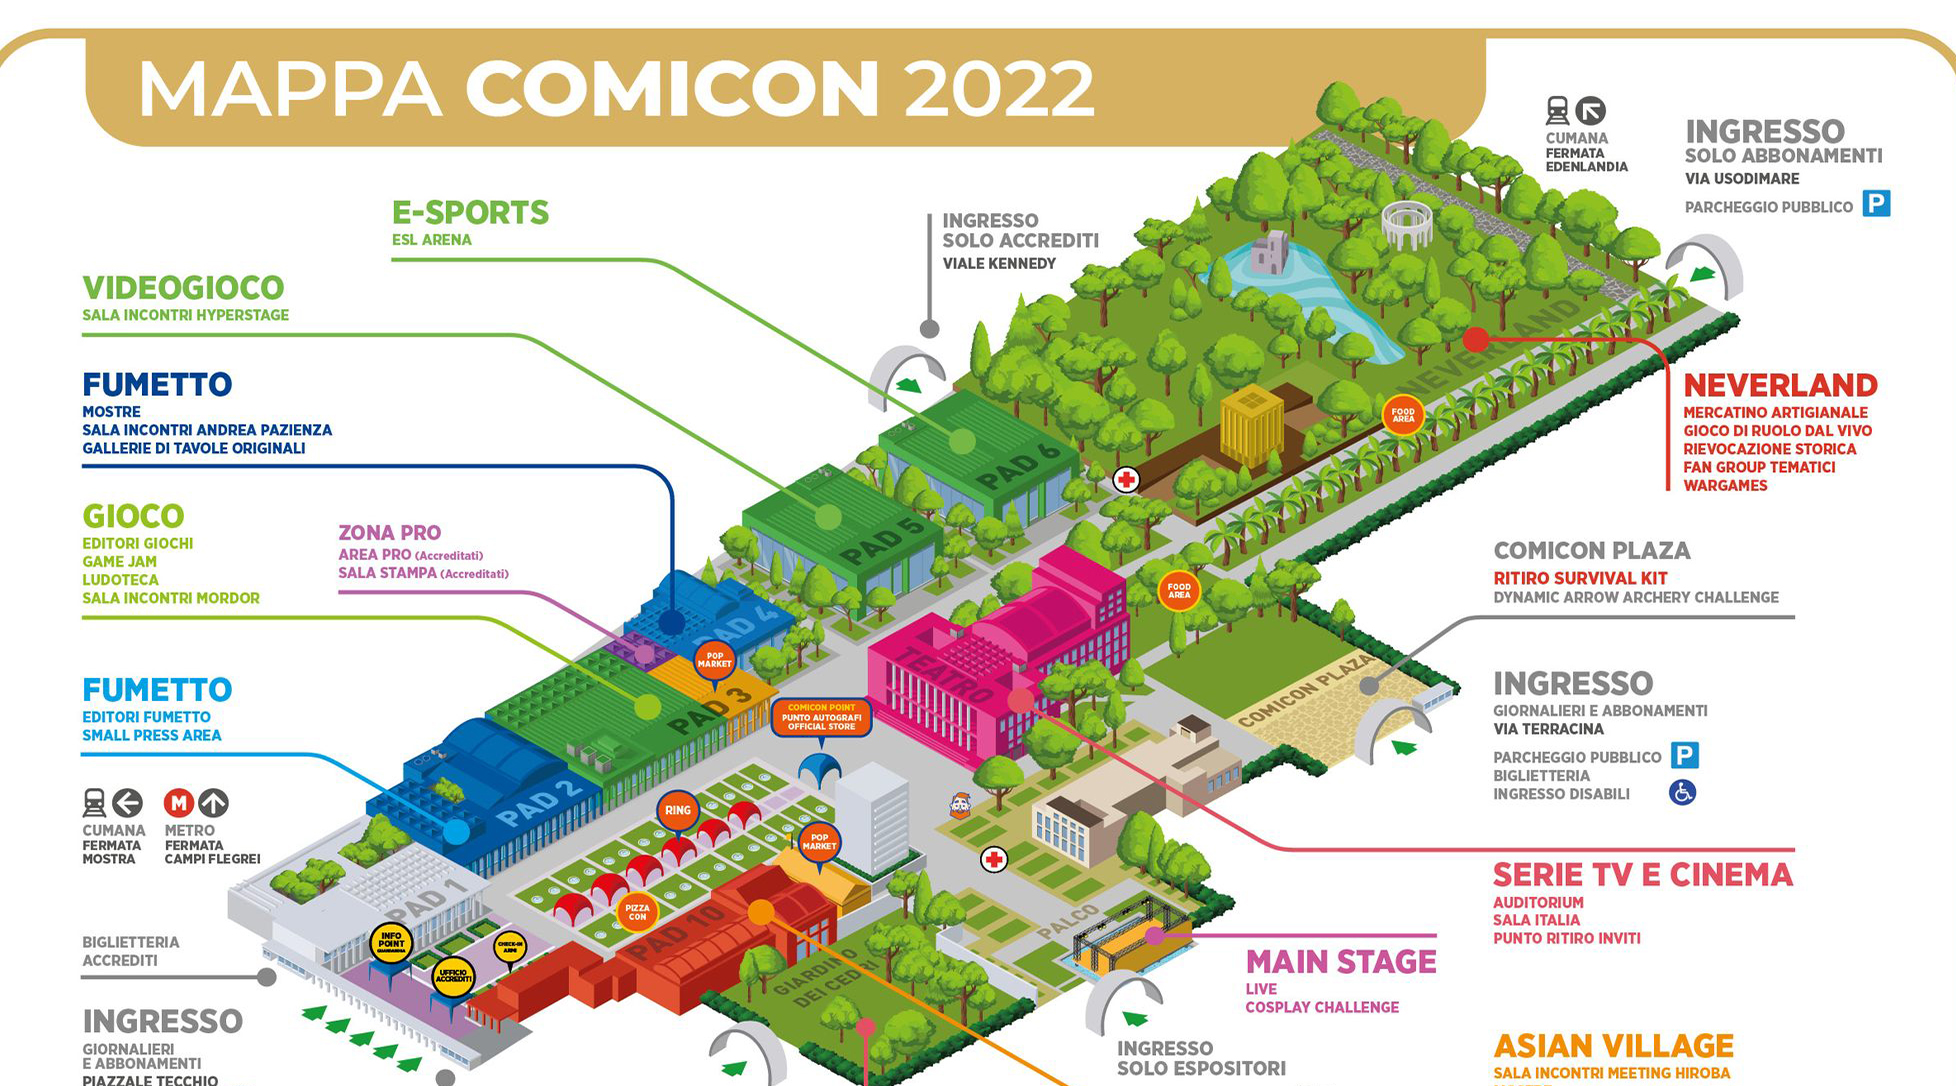 Mappa Comicon 2022, ridotta